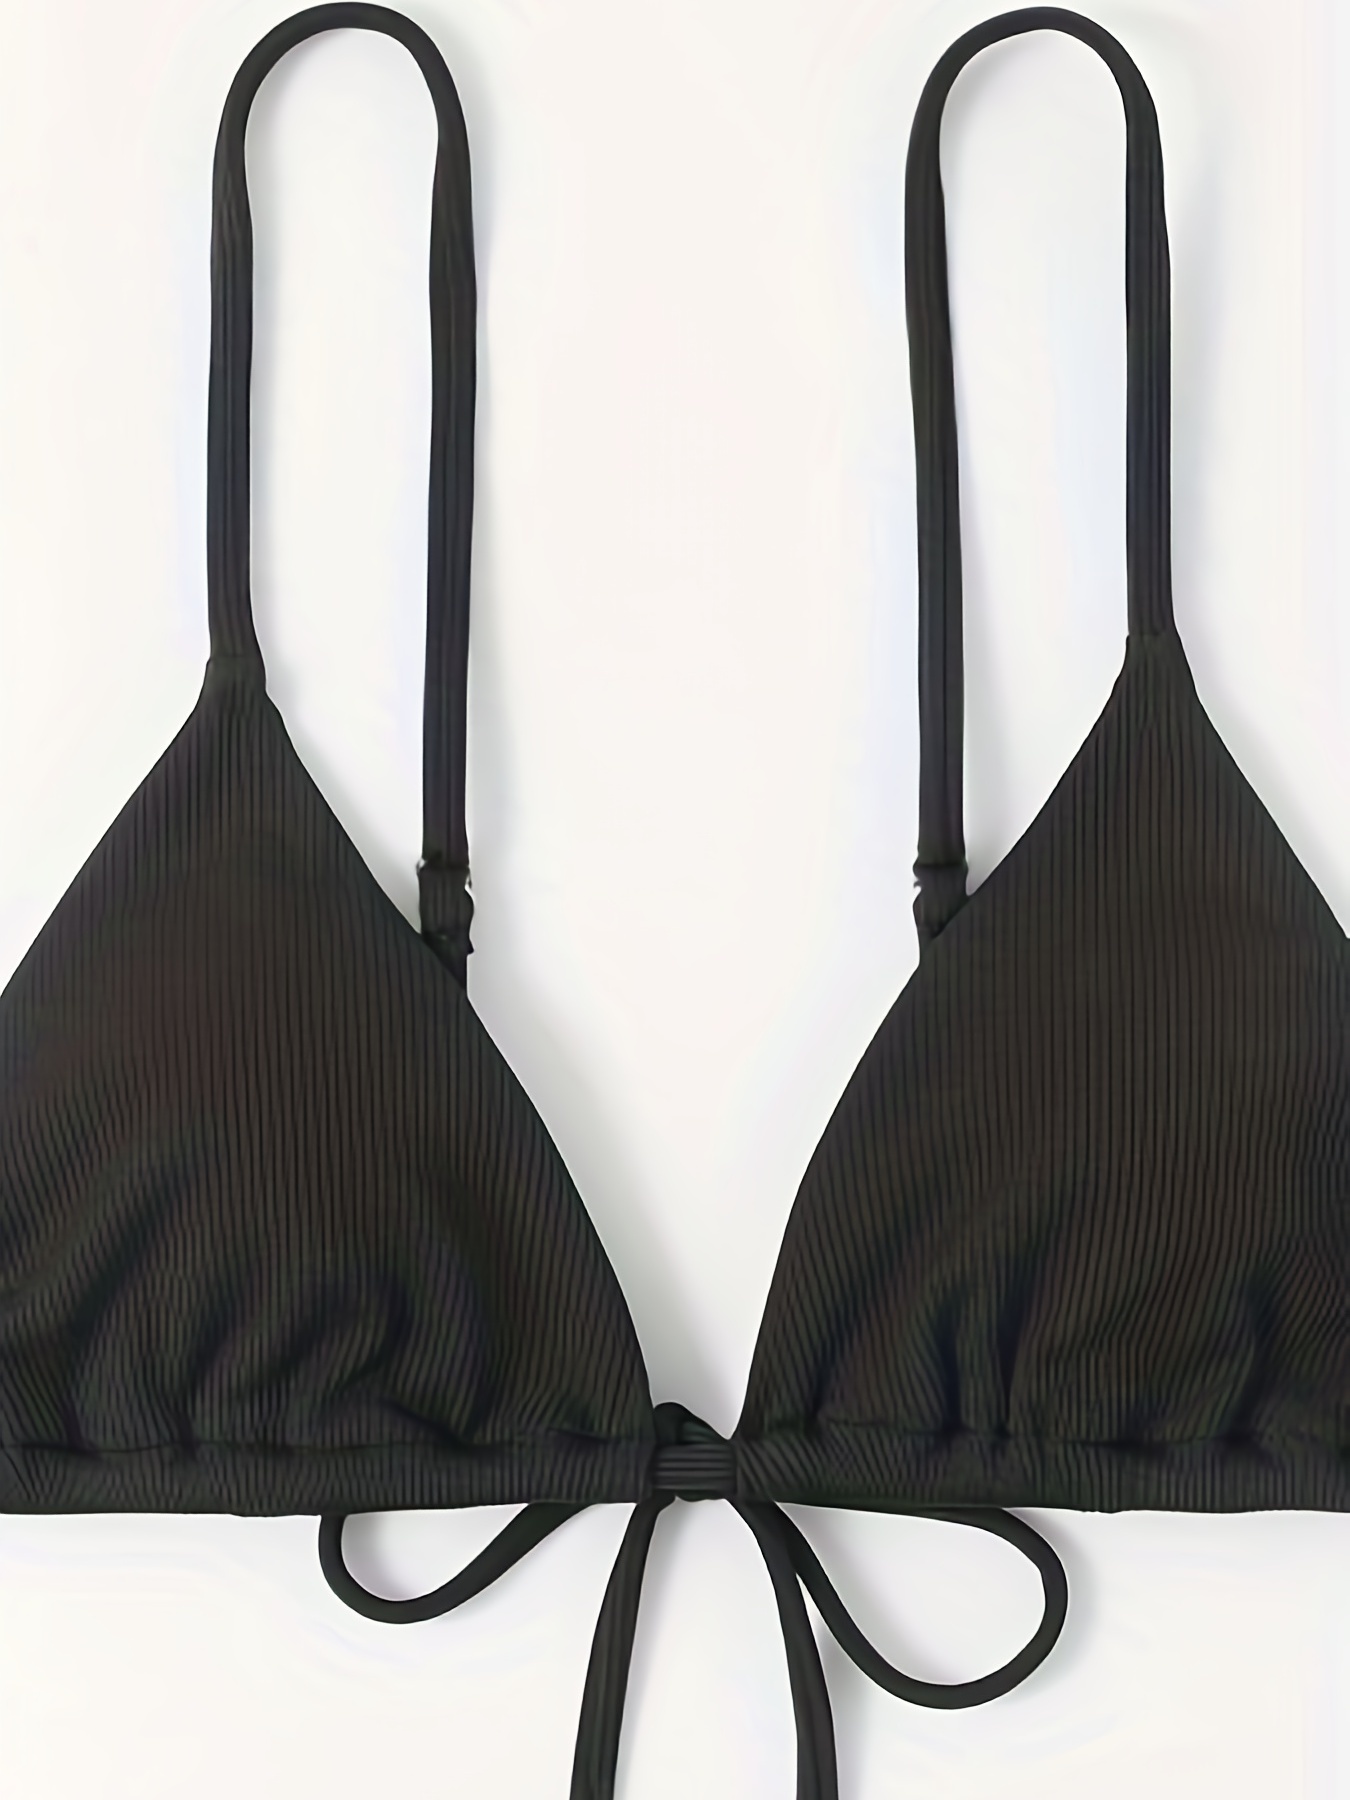 Hollister triangle bikini top